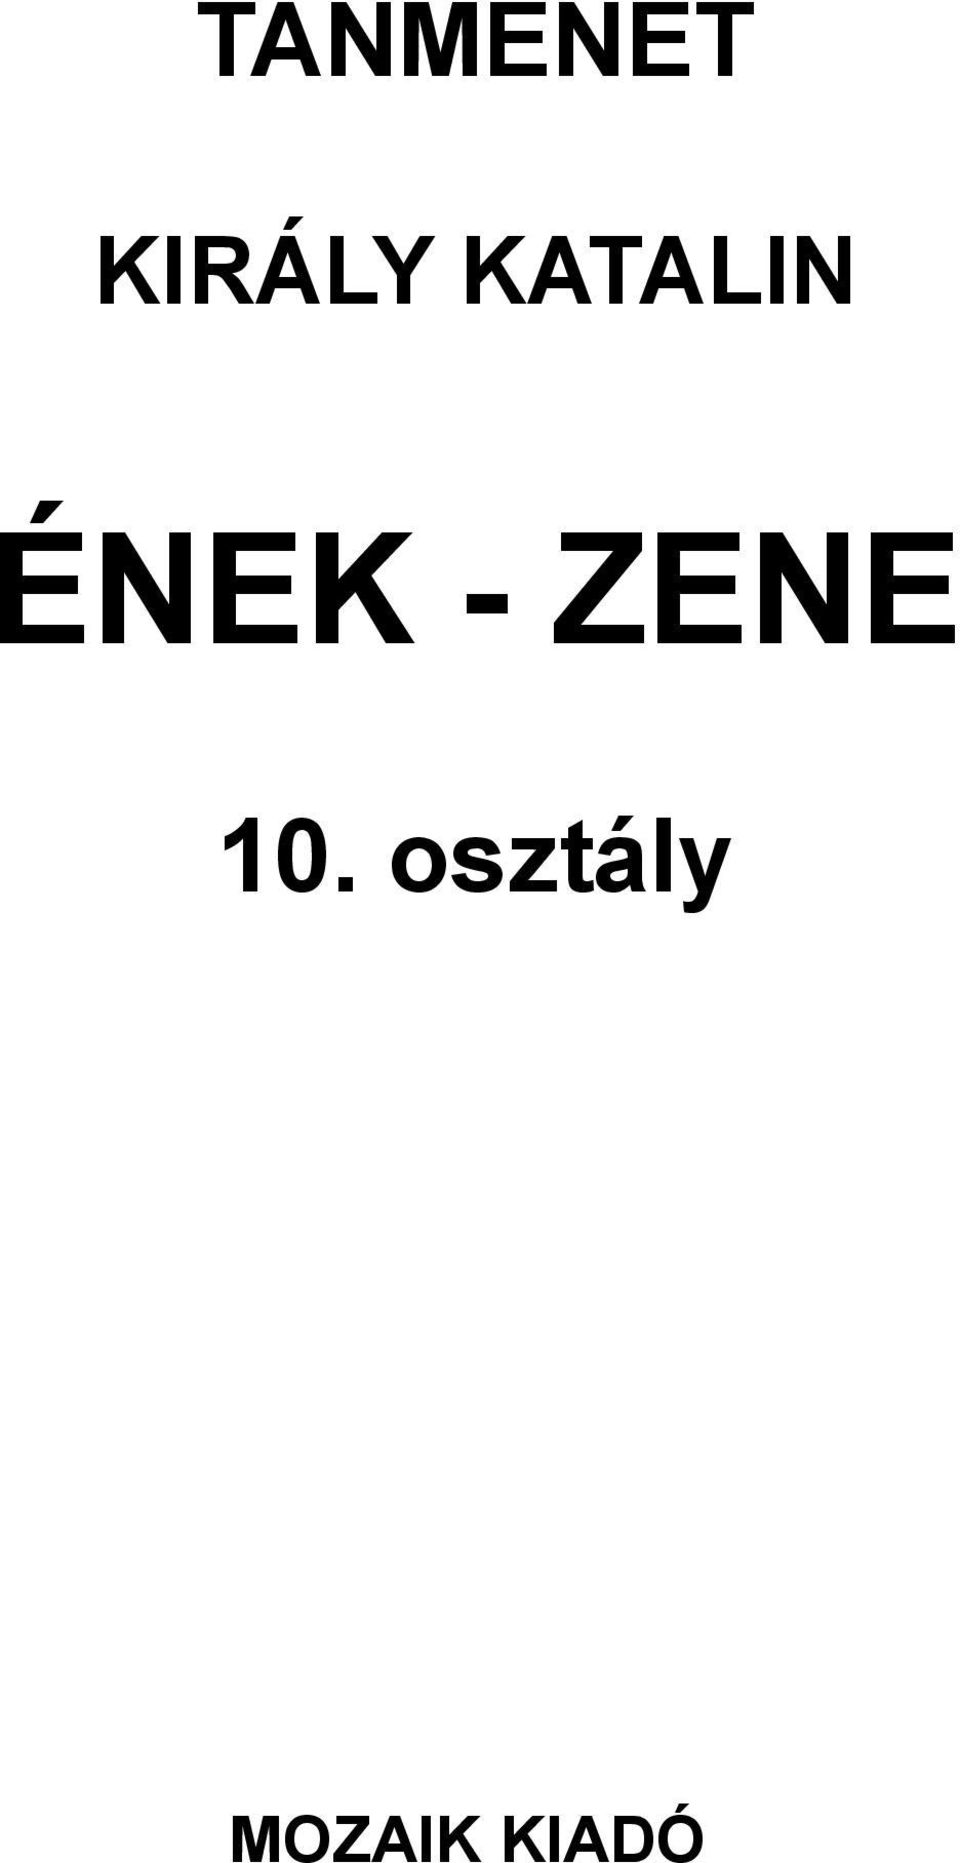 ÉNEK - ZENE 10.